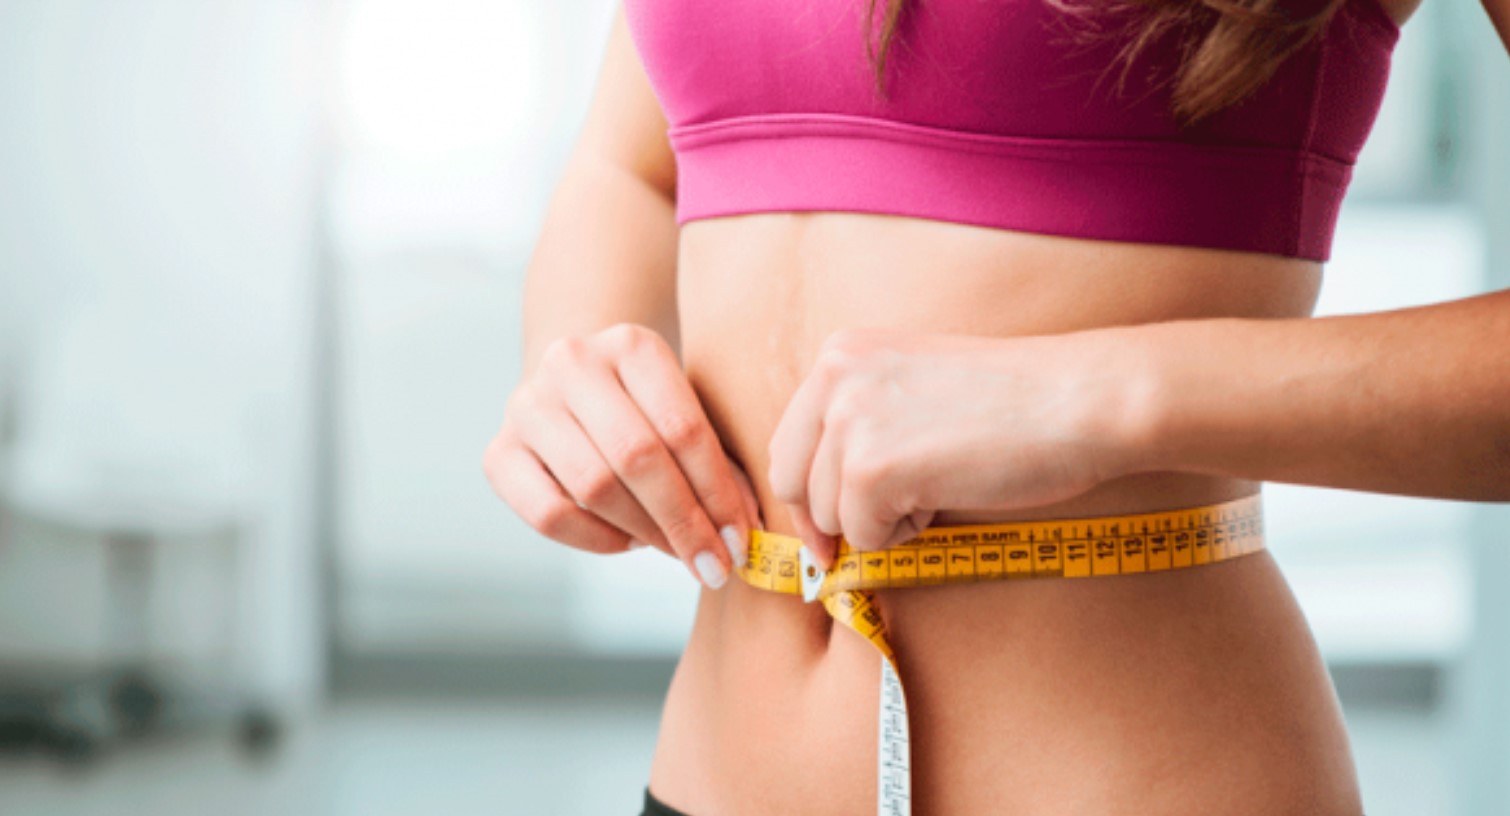 Neste artigo, conheça 5 métodos infalíveis para perder peso. Vamos desvendar os mitos e verdades sobre a perda de peso. FOTO: internet.